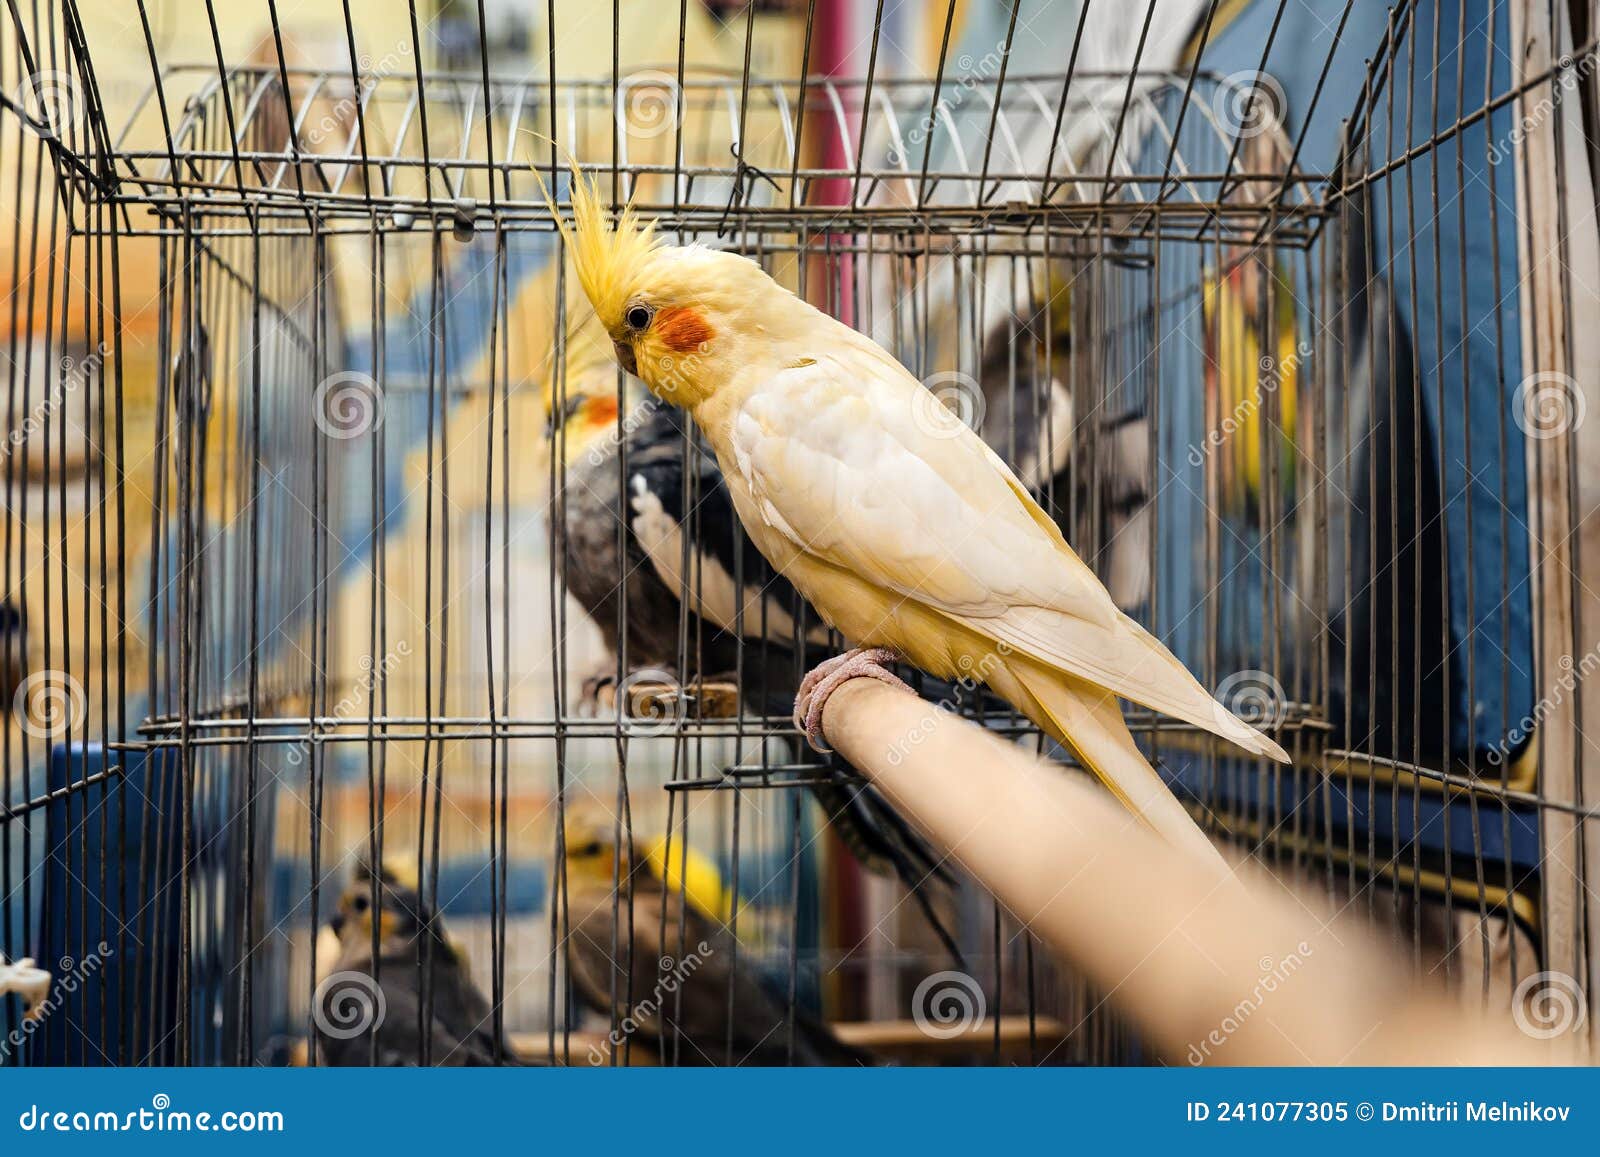 动物园的鹦鹉 被囚禁的鸟 动物园 库存图片. 图片 包括有 飞行, 双翼飞机, 公开承认, 蓝色, 自然 - 162569481